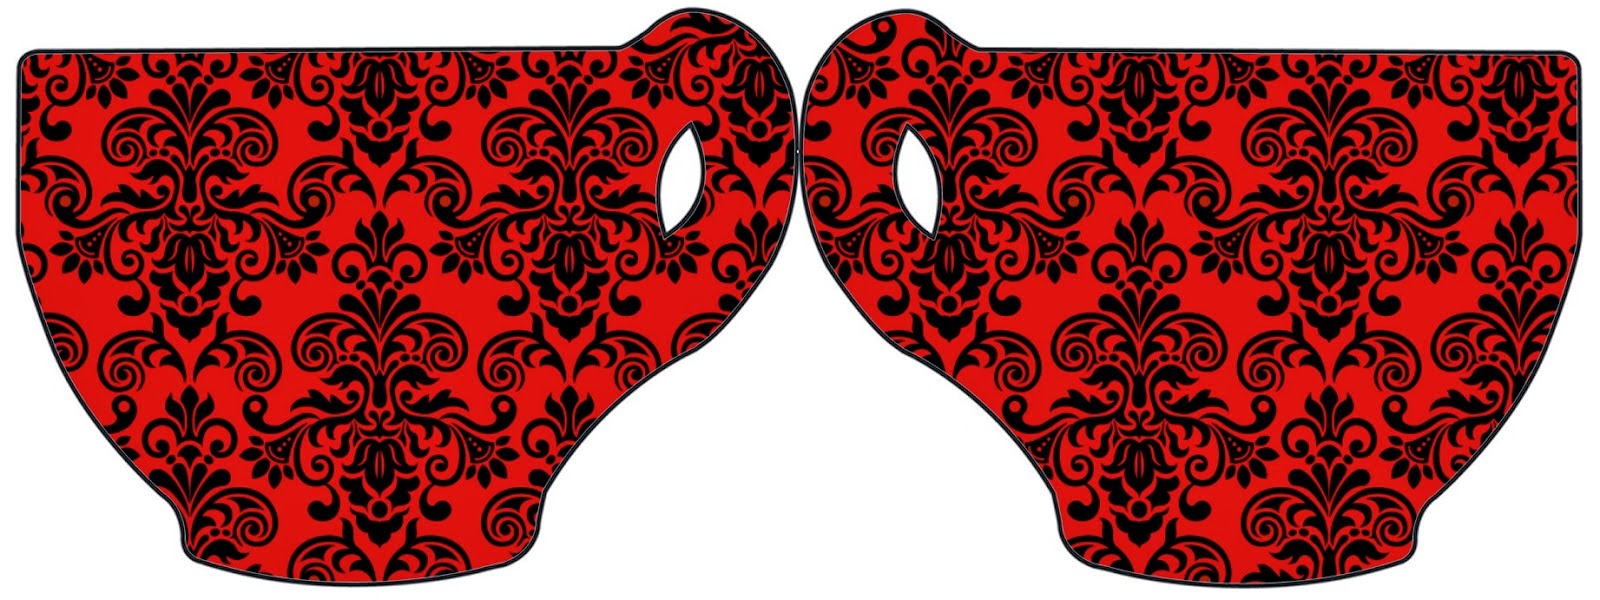 Tarjeta con forma de Taza de Damasco Negro en Fondo Rojo.